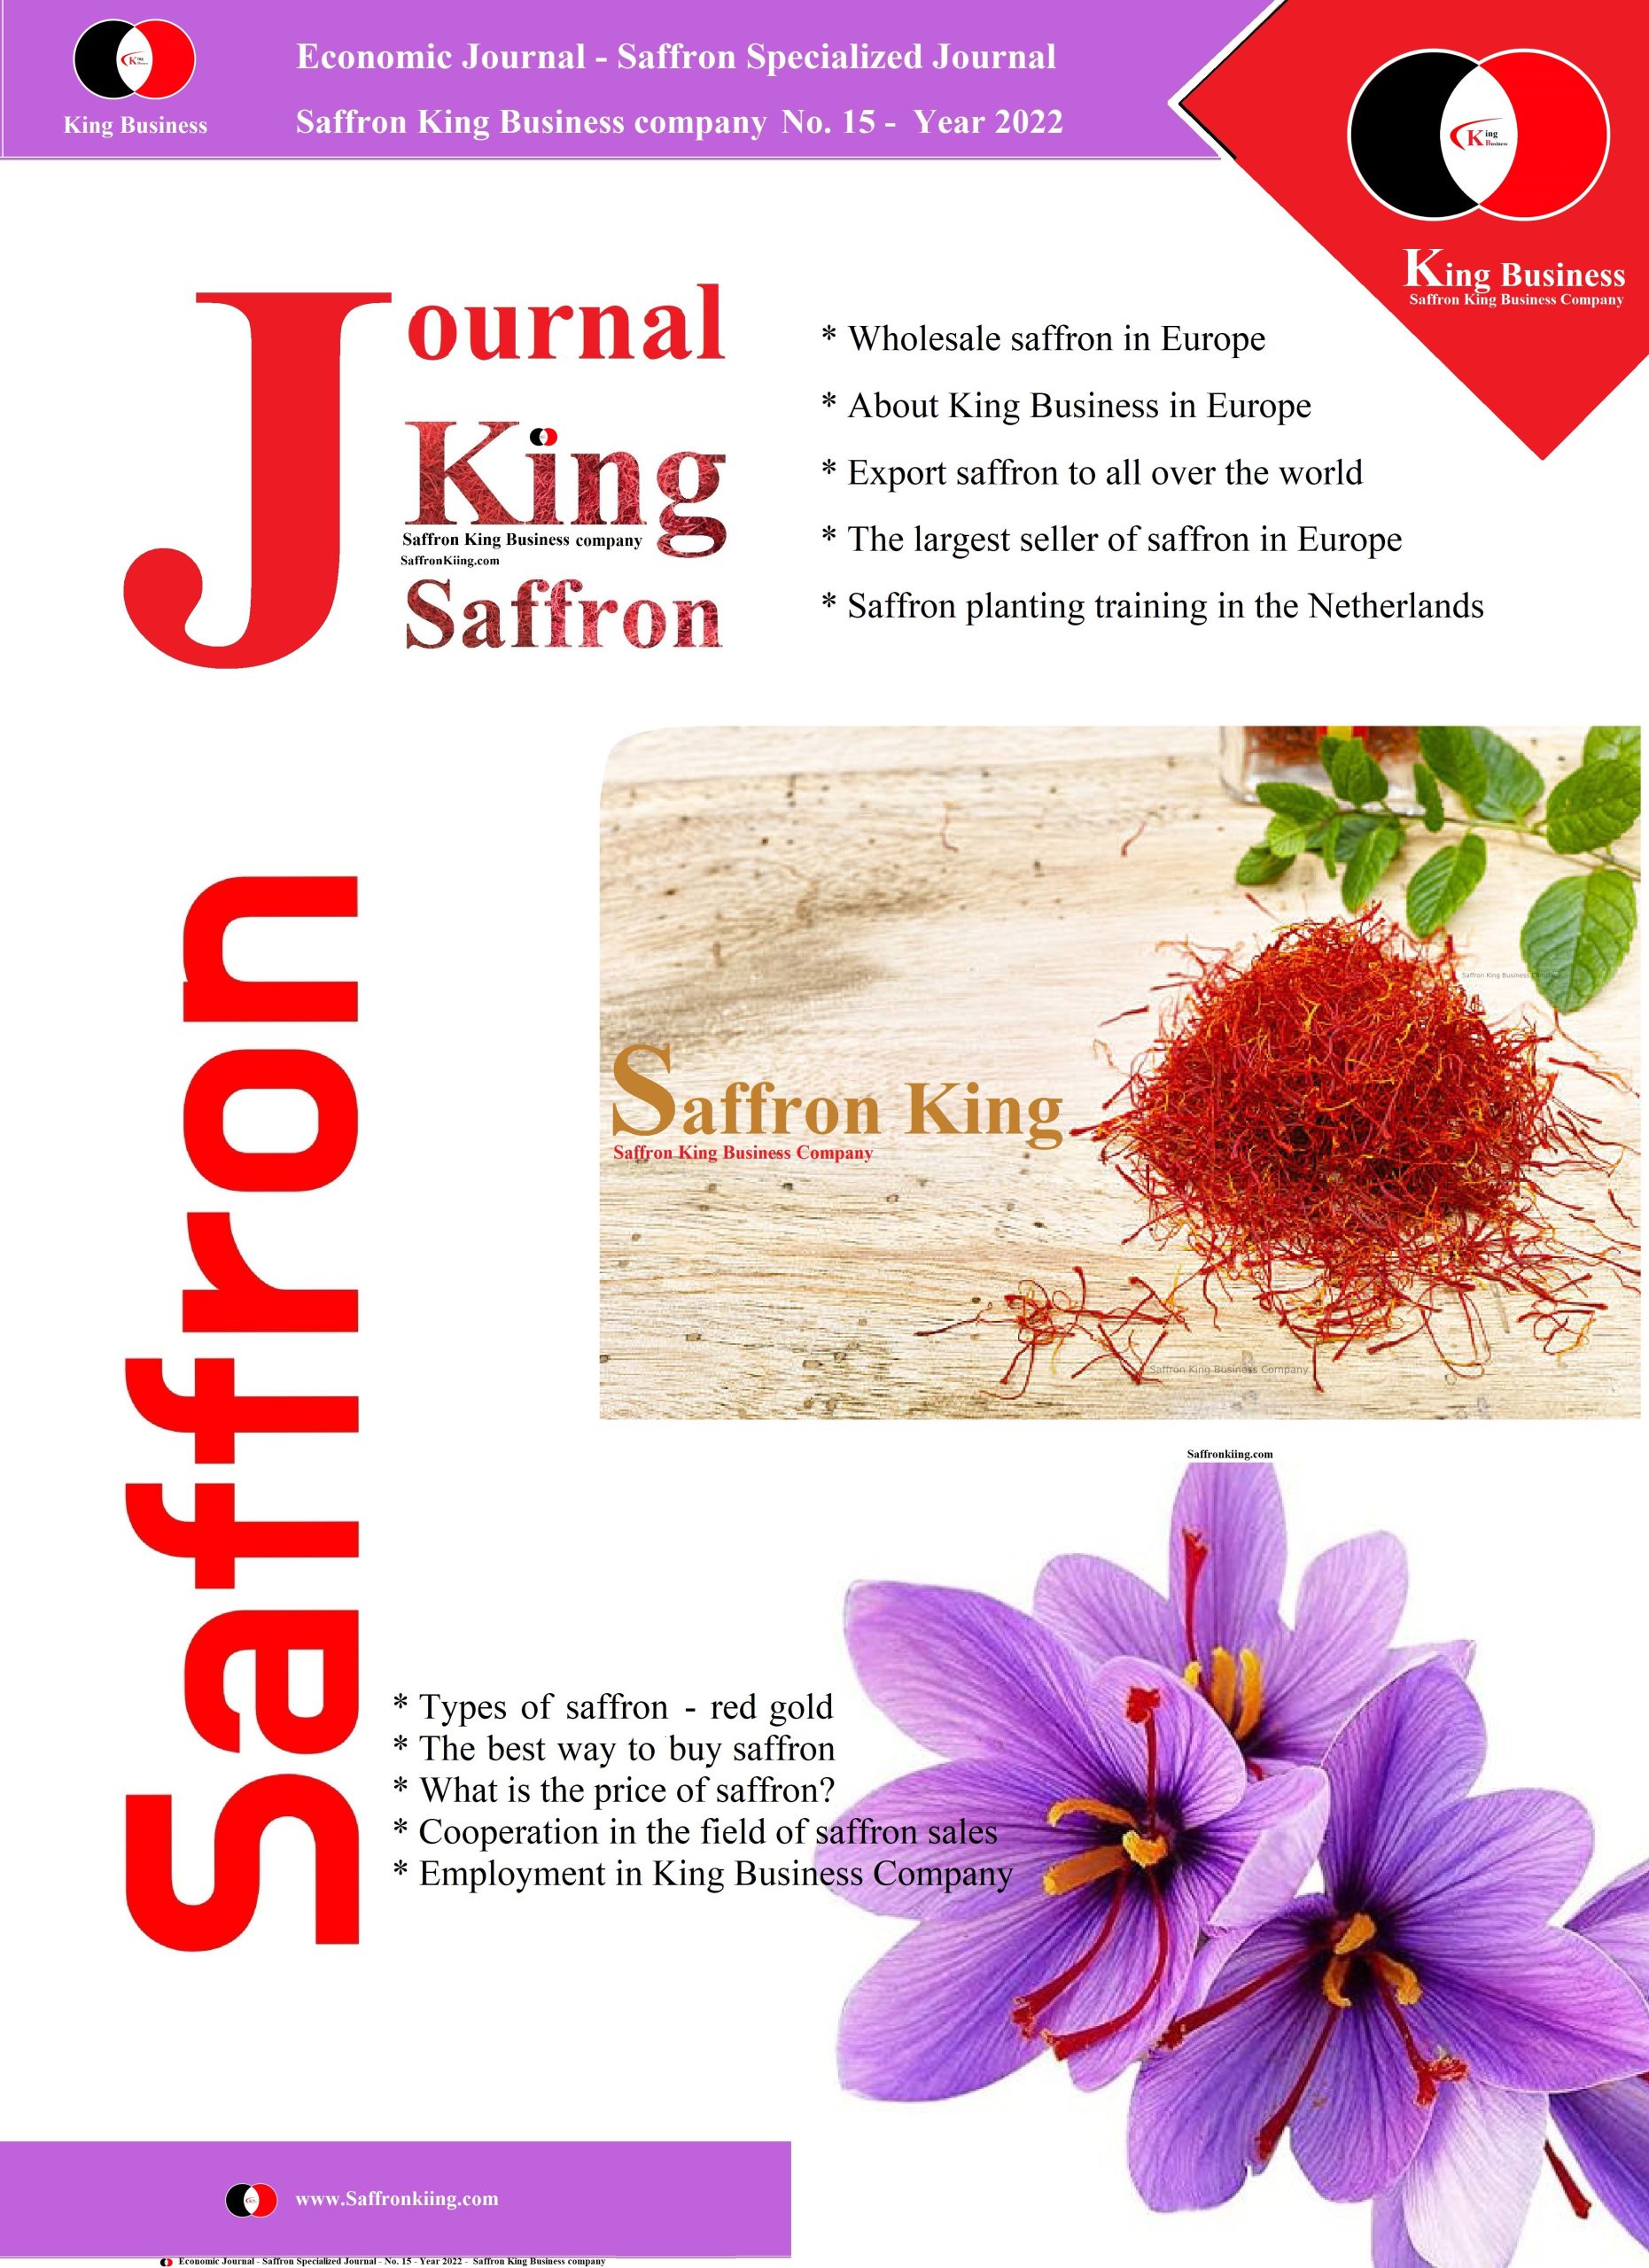 Saffron Economic Journal - Saffron King